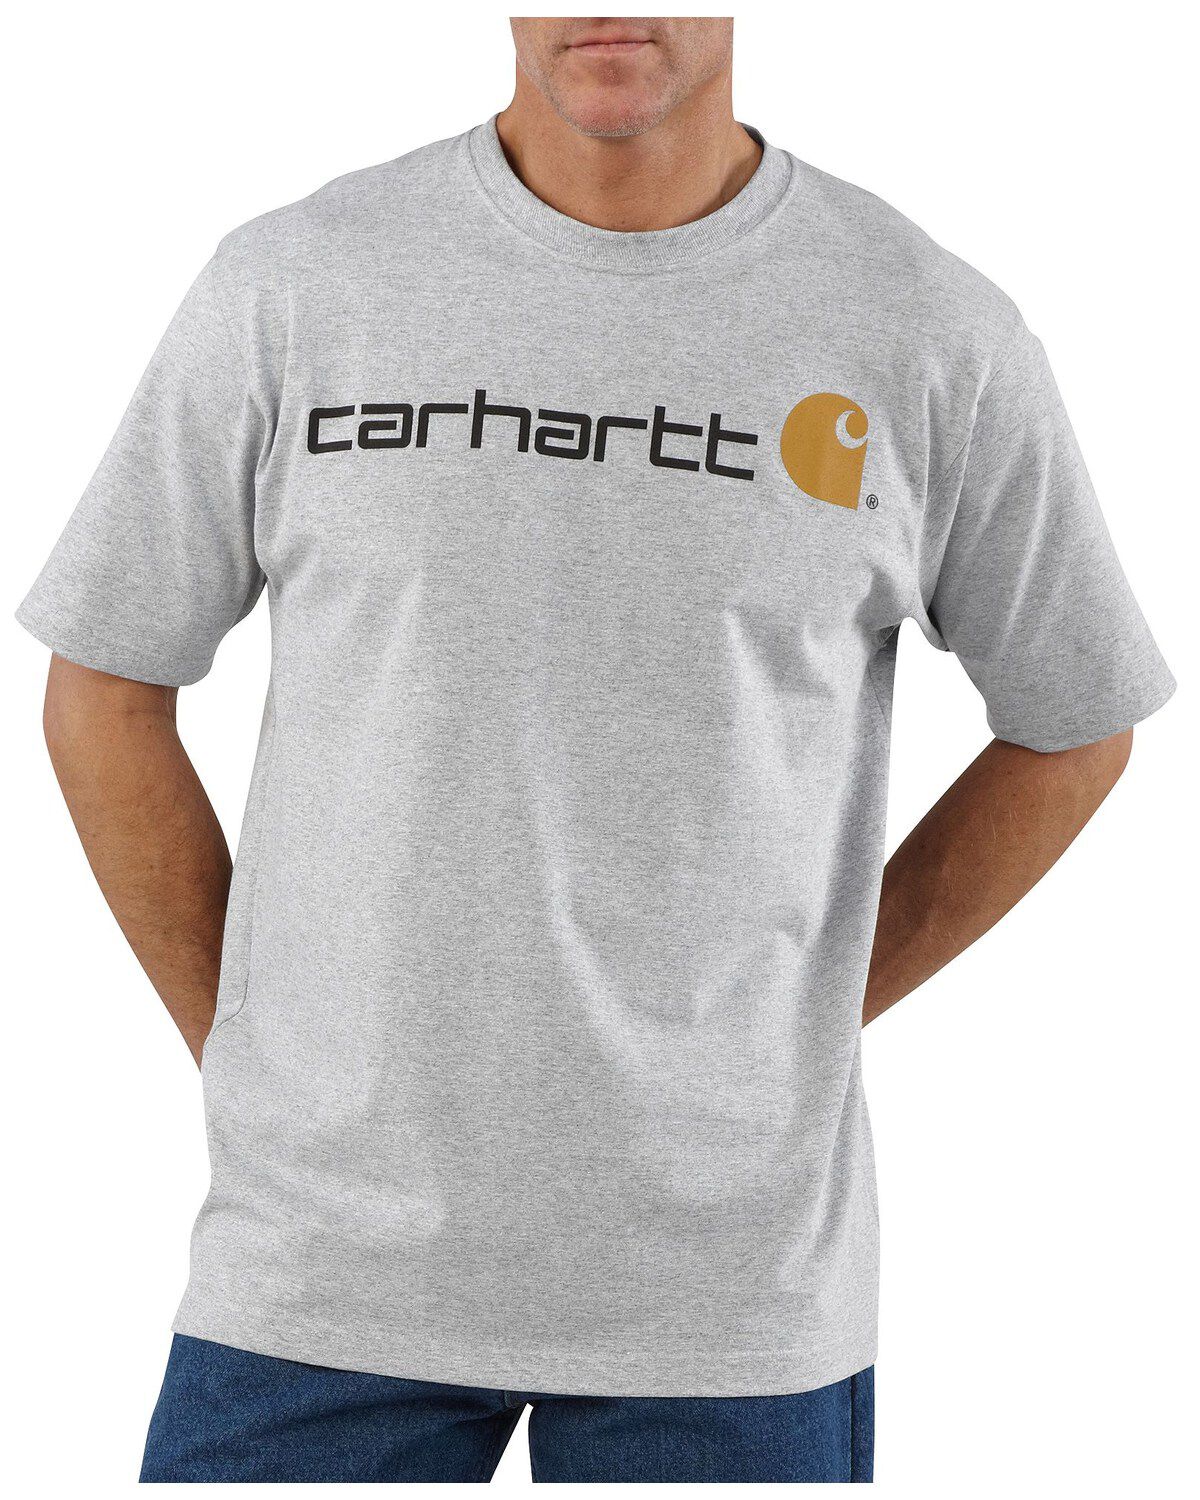 76-81cm Moss Heather Carhartt Core Logo T-Shirt Chest 30-32 XS